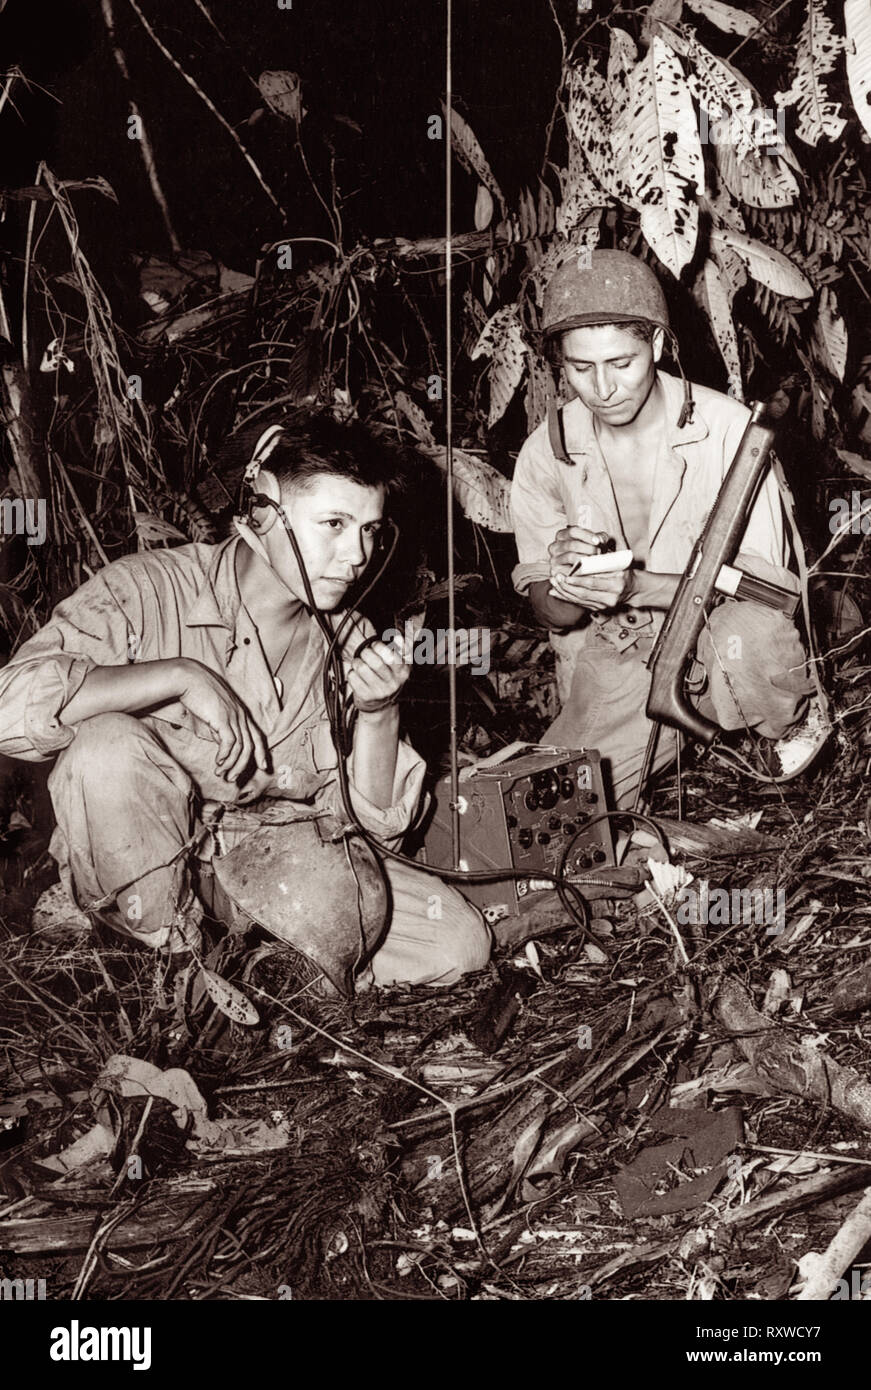 Navajo code talkers Corporal Henry Backen, jr., (links) und Private First Class George Kirk (rechts), mit einem Marine Signal Unit, Betrieb eines tragbaren Radio in einem Clearing sie gerade im dichten Dschungel dicht hinter der Front auf der Insel Bougainville in Papua Neuguinea haben während des Zweiten Weltkrieges im Dezember 1943 gehackt. Stockfoto